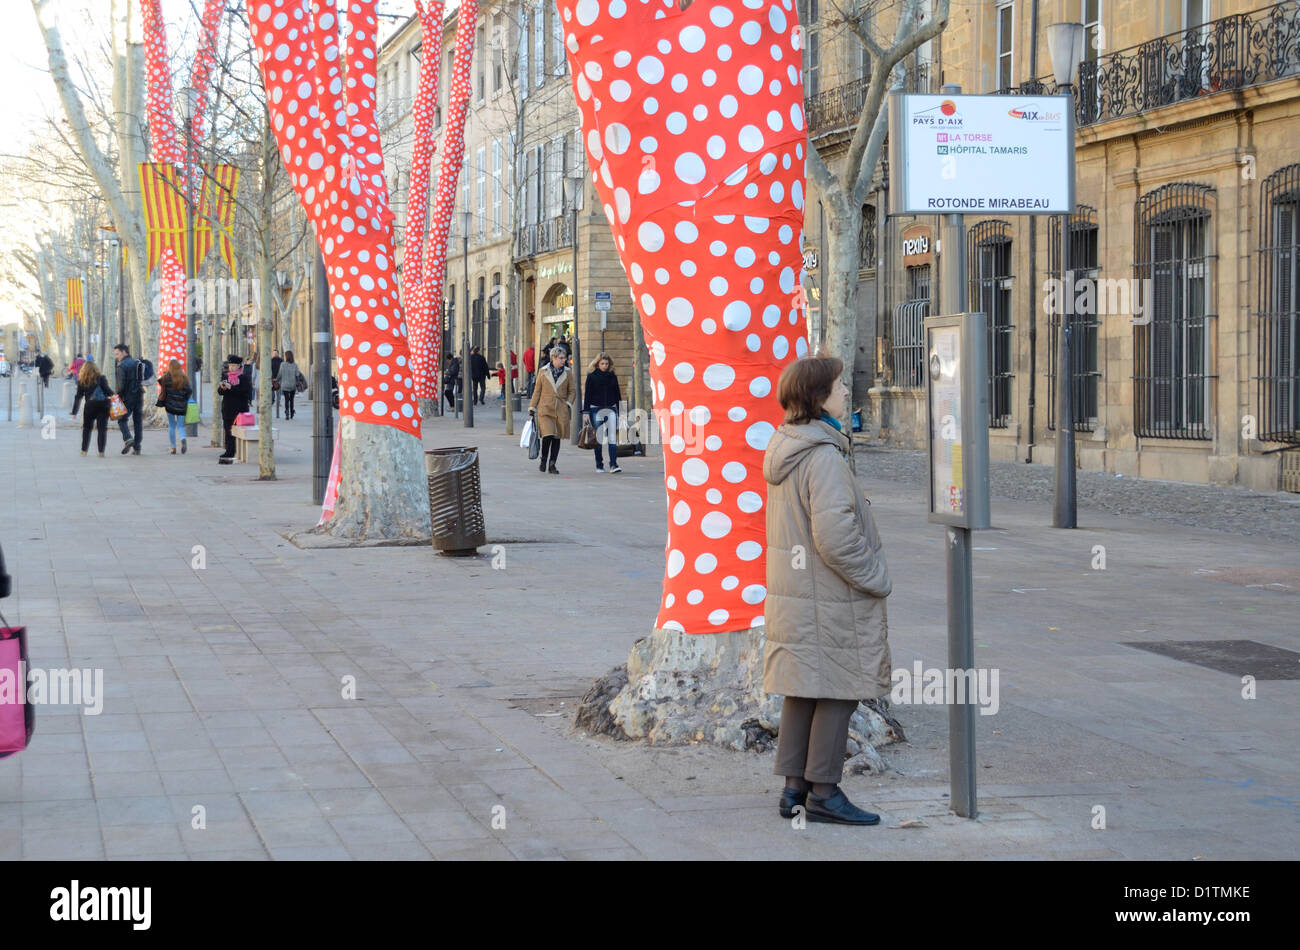 Viale degli alberi di platano avvolto in rosso & bianco Polka Dot Paper da artista giapponese Yayoi Kusama Cours Mirabeau Aix-en-Provence per l'inaugurazione di Marsiglia-Provenza 2013 capitale europea della cultura Provenza Francia Foto Stock